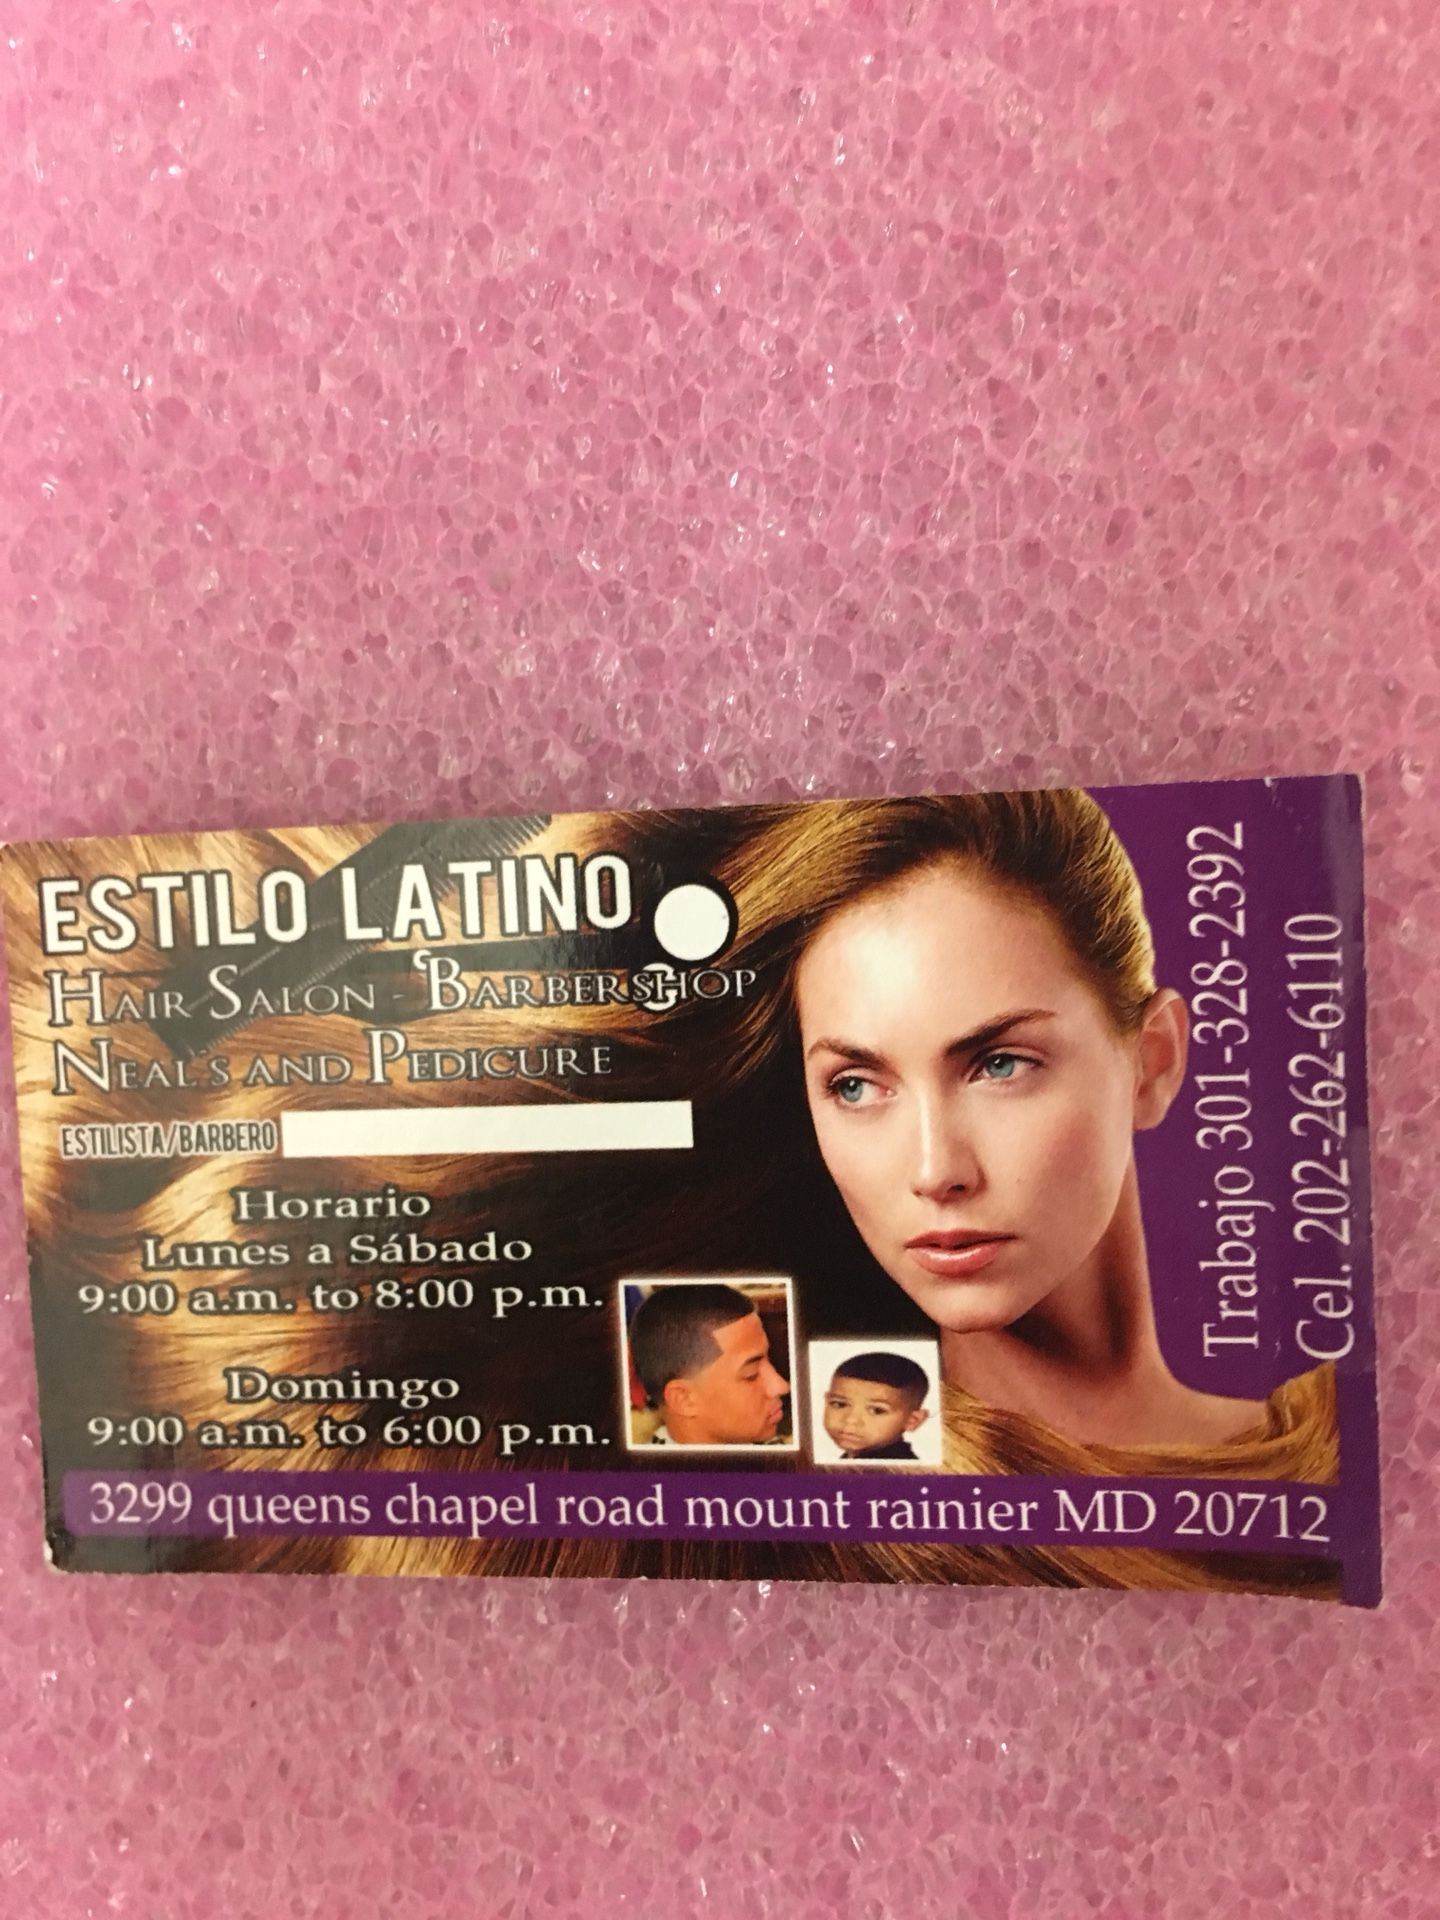 Estilo latino hair salon and barber shop